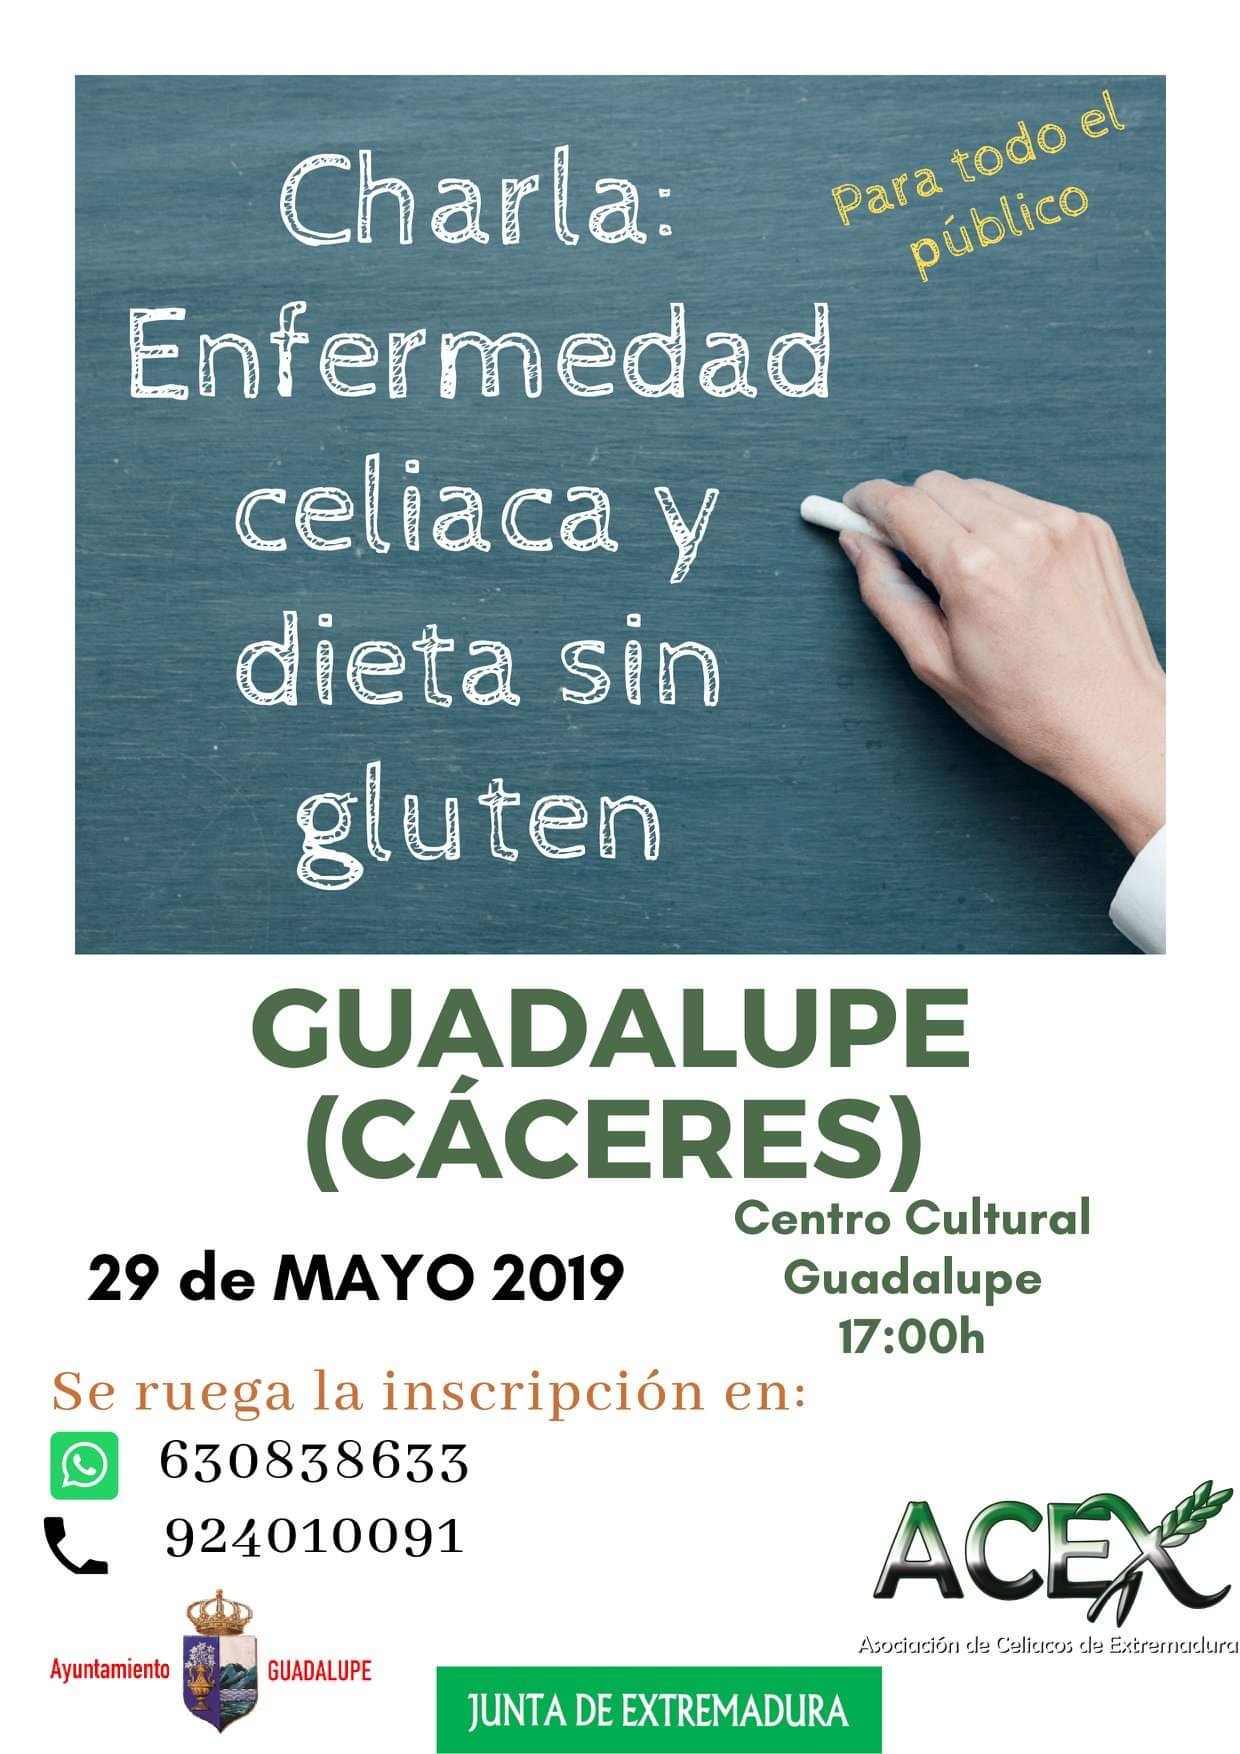 Charla sobre la enfermedad celiaca y dieta sin gluten mayo 2019 - Guadalupe (Cáceres)